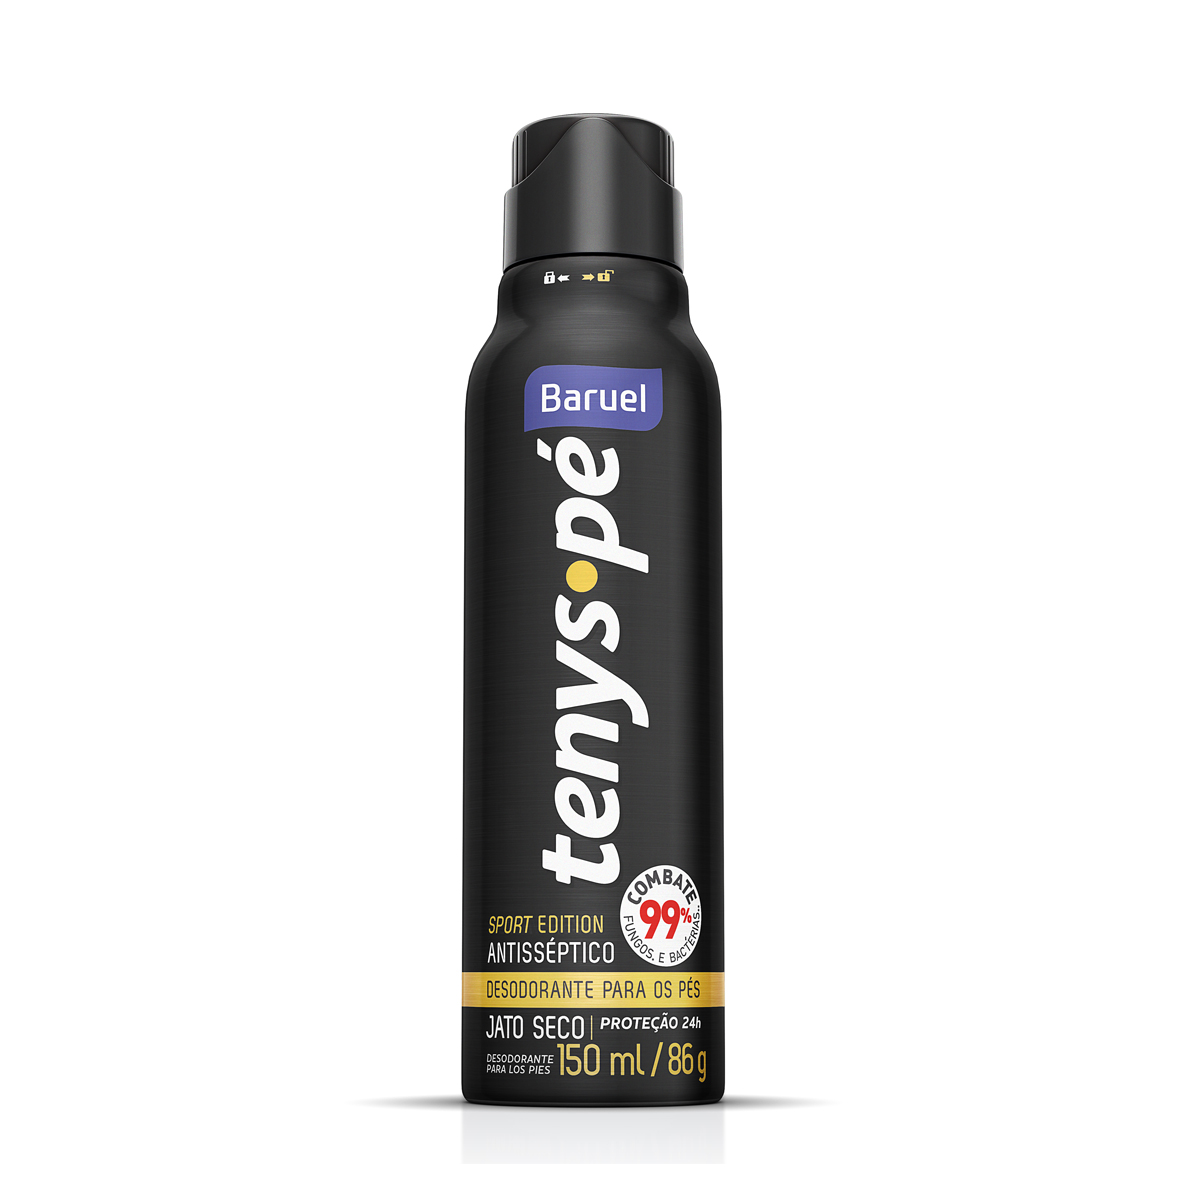 Desodorante para os pés Jato Seco Tenys Pé Sport Edition 150ml